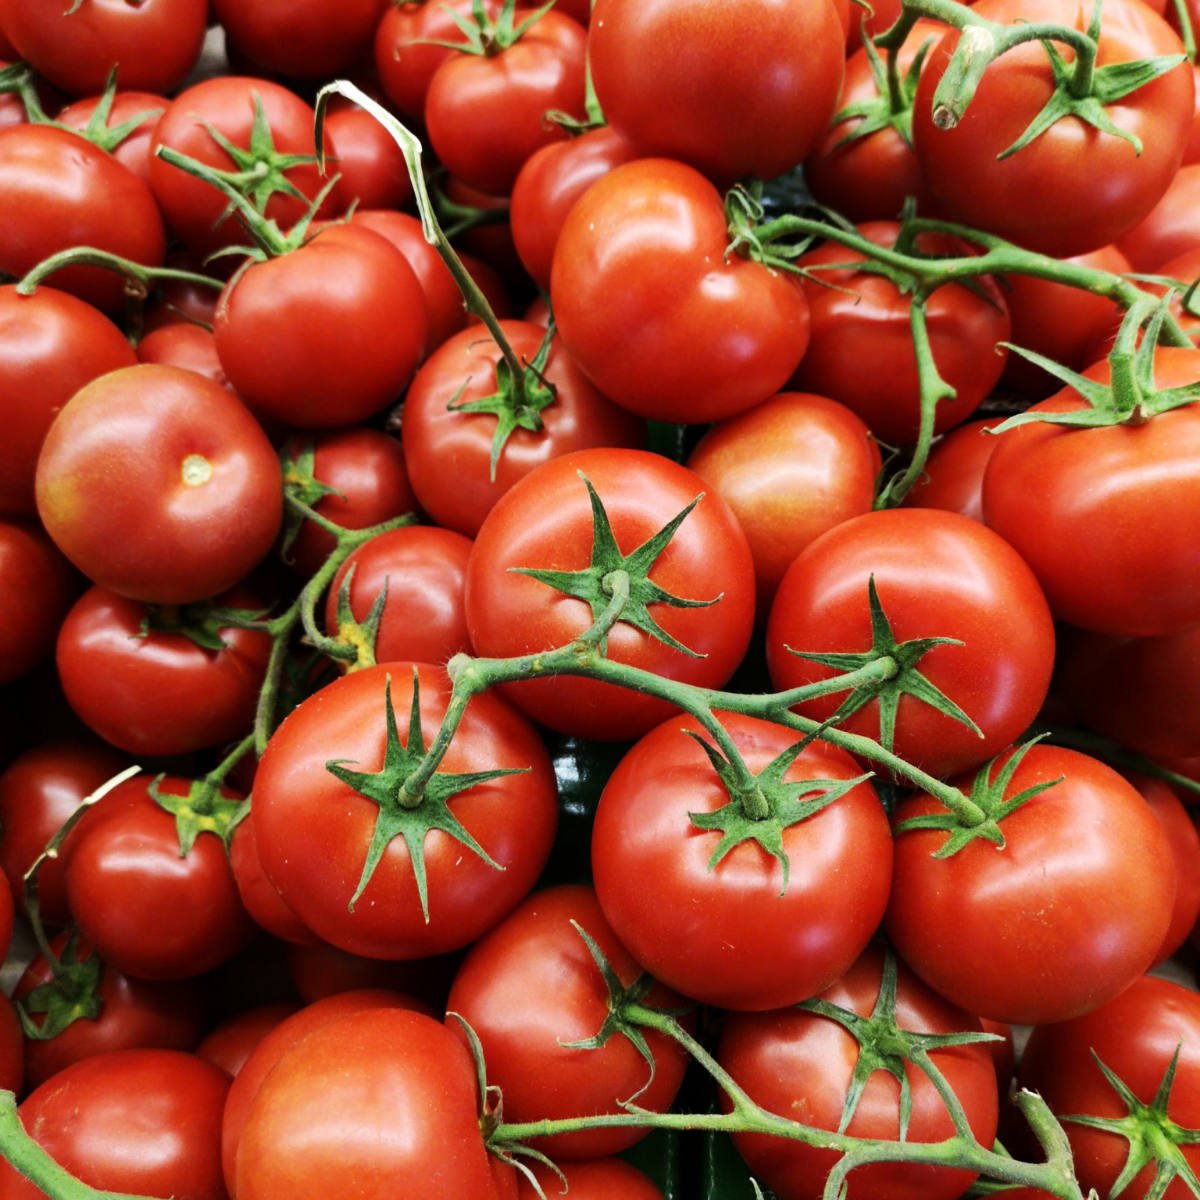 Tomato products from Ekopallen